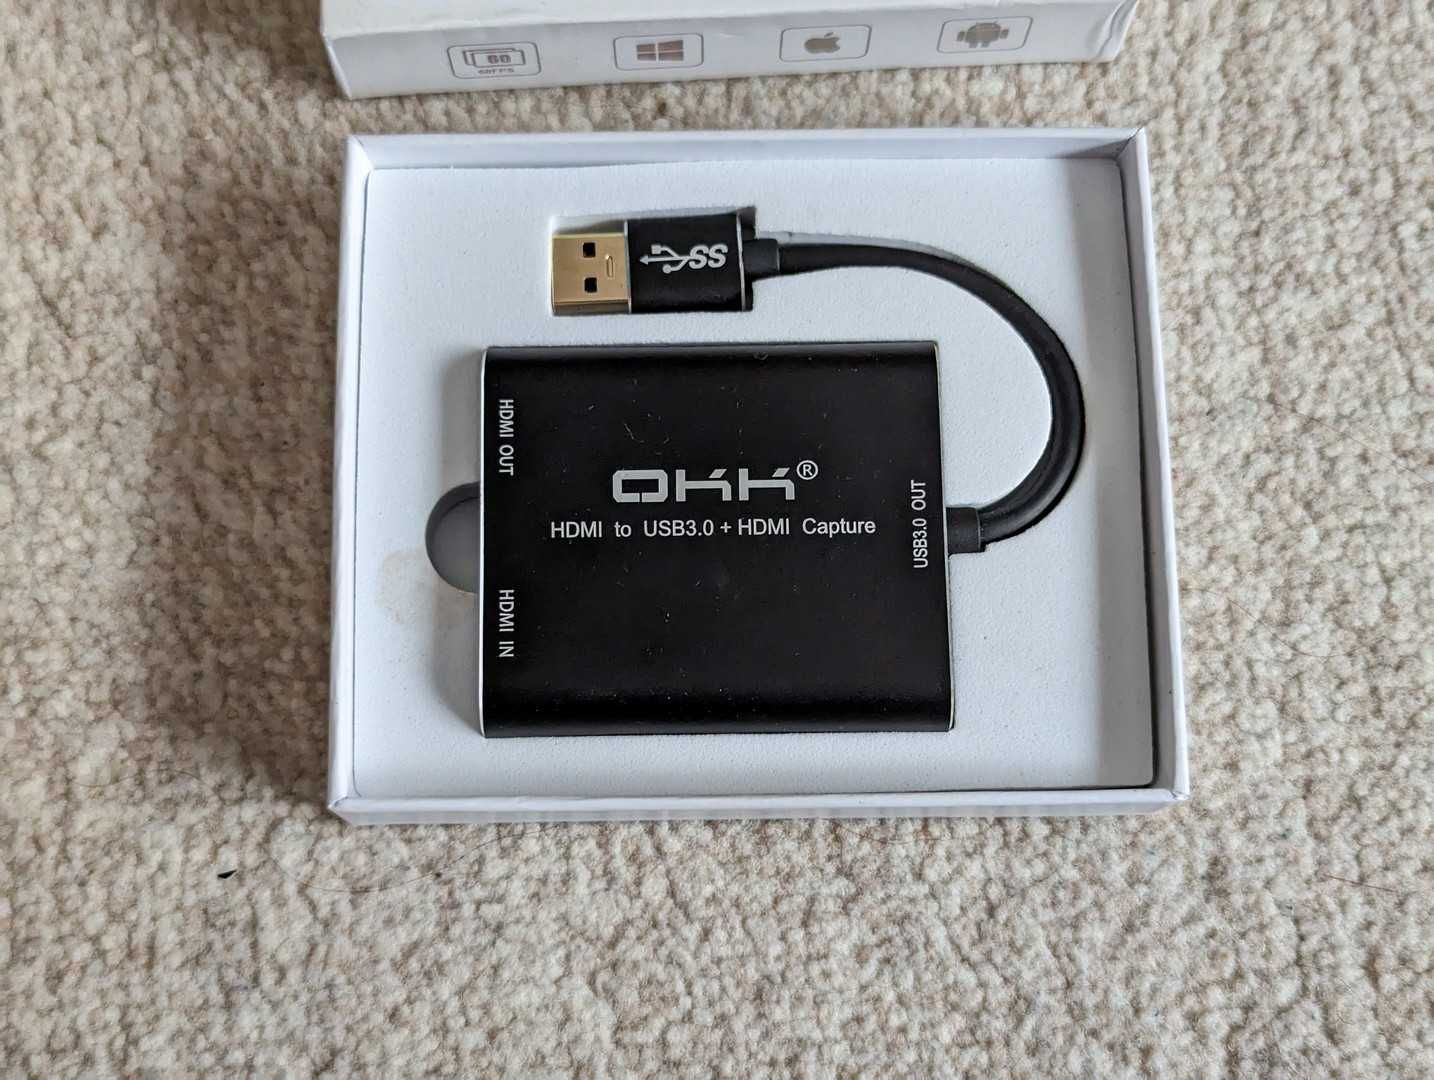 Placa de captura HDMI OKK (USB 3.0) in cutie, in stare buna